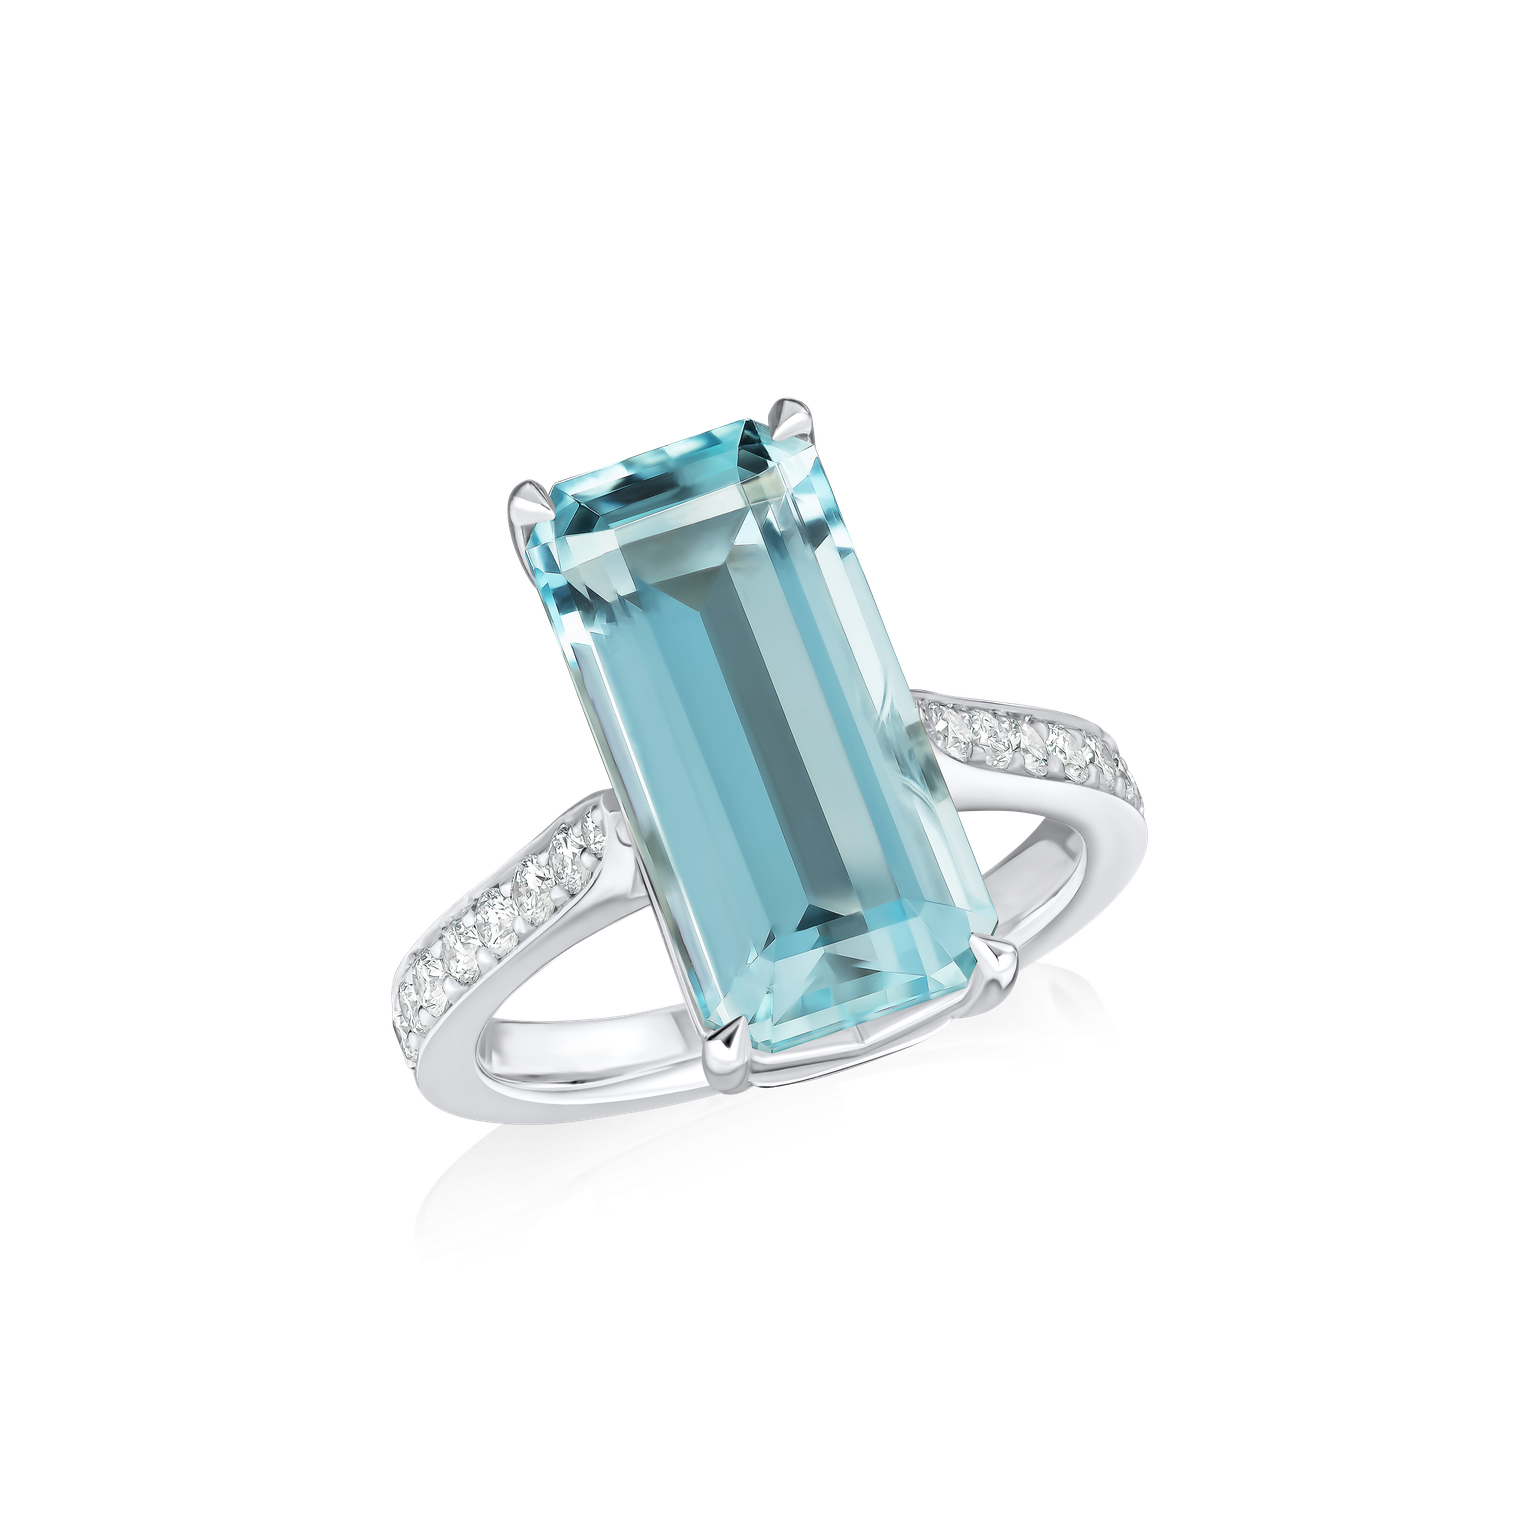 Platinum Octagon Aquamarine Ring with Diamond-Set Shoulders